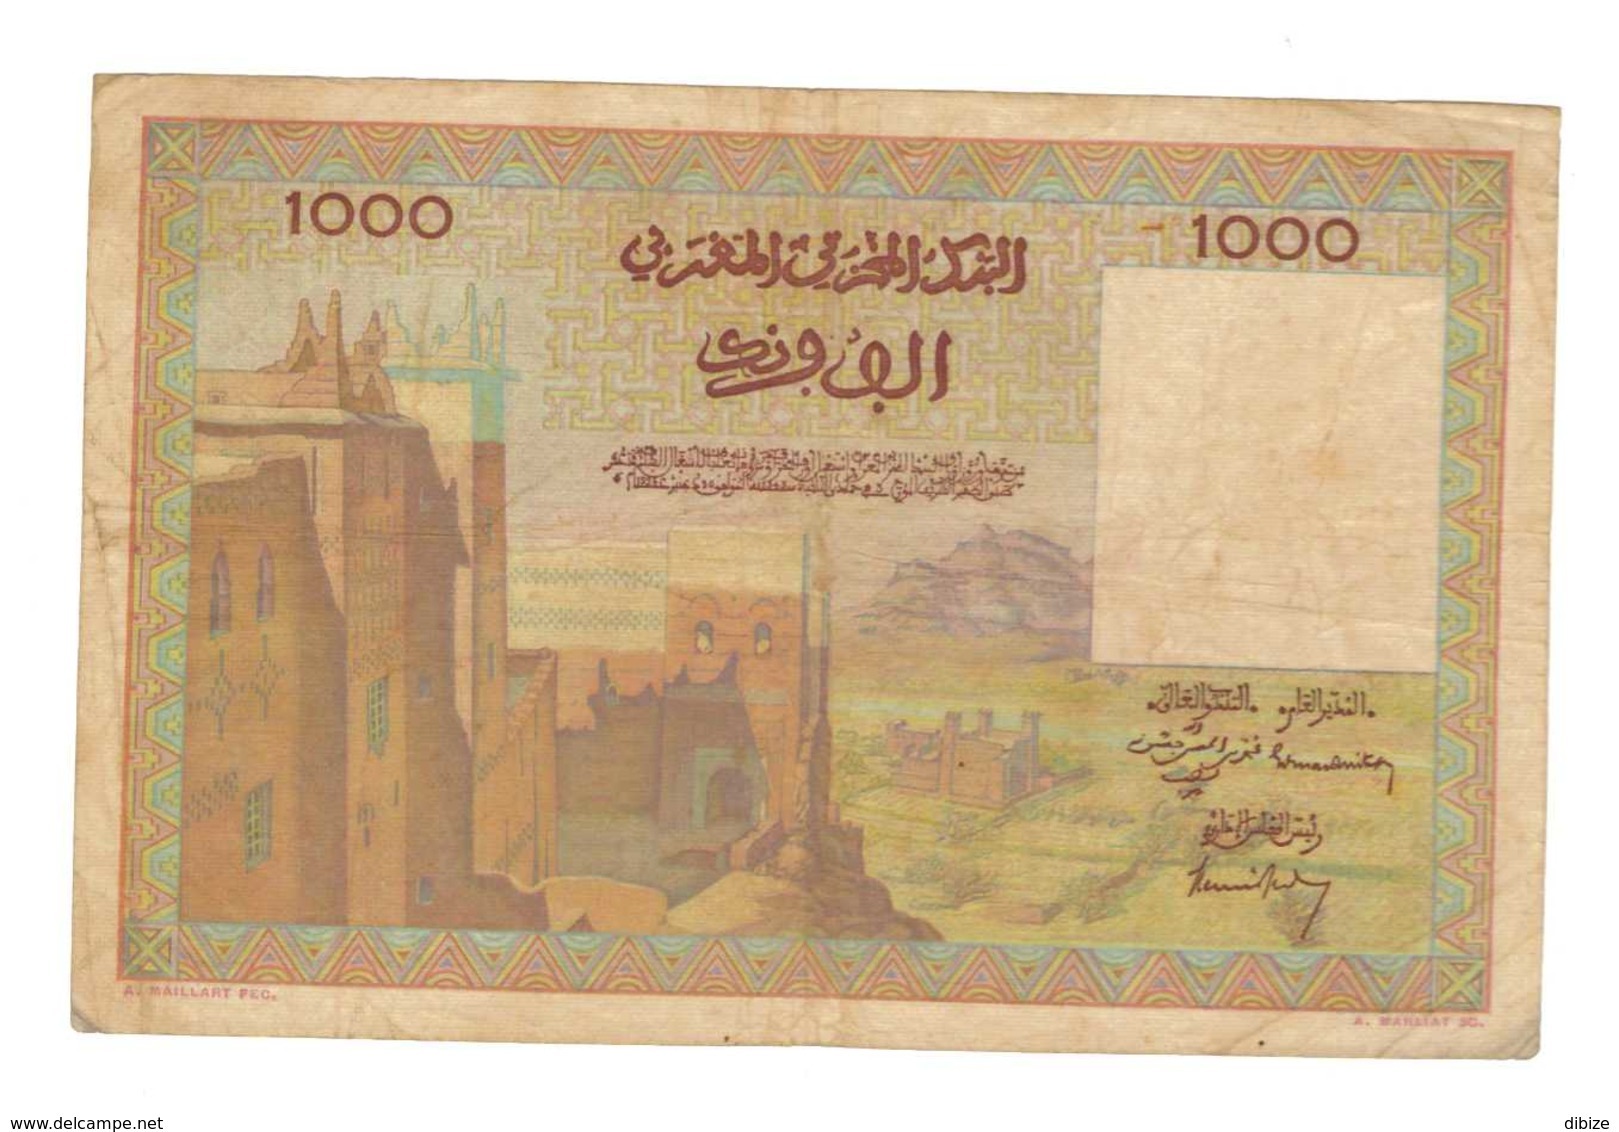 Maroc. Protectorat Français. Billet De 1000 Francs Du 15-11-1956. Etat Moyen. - Maroc